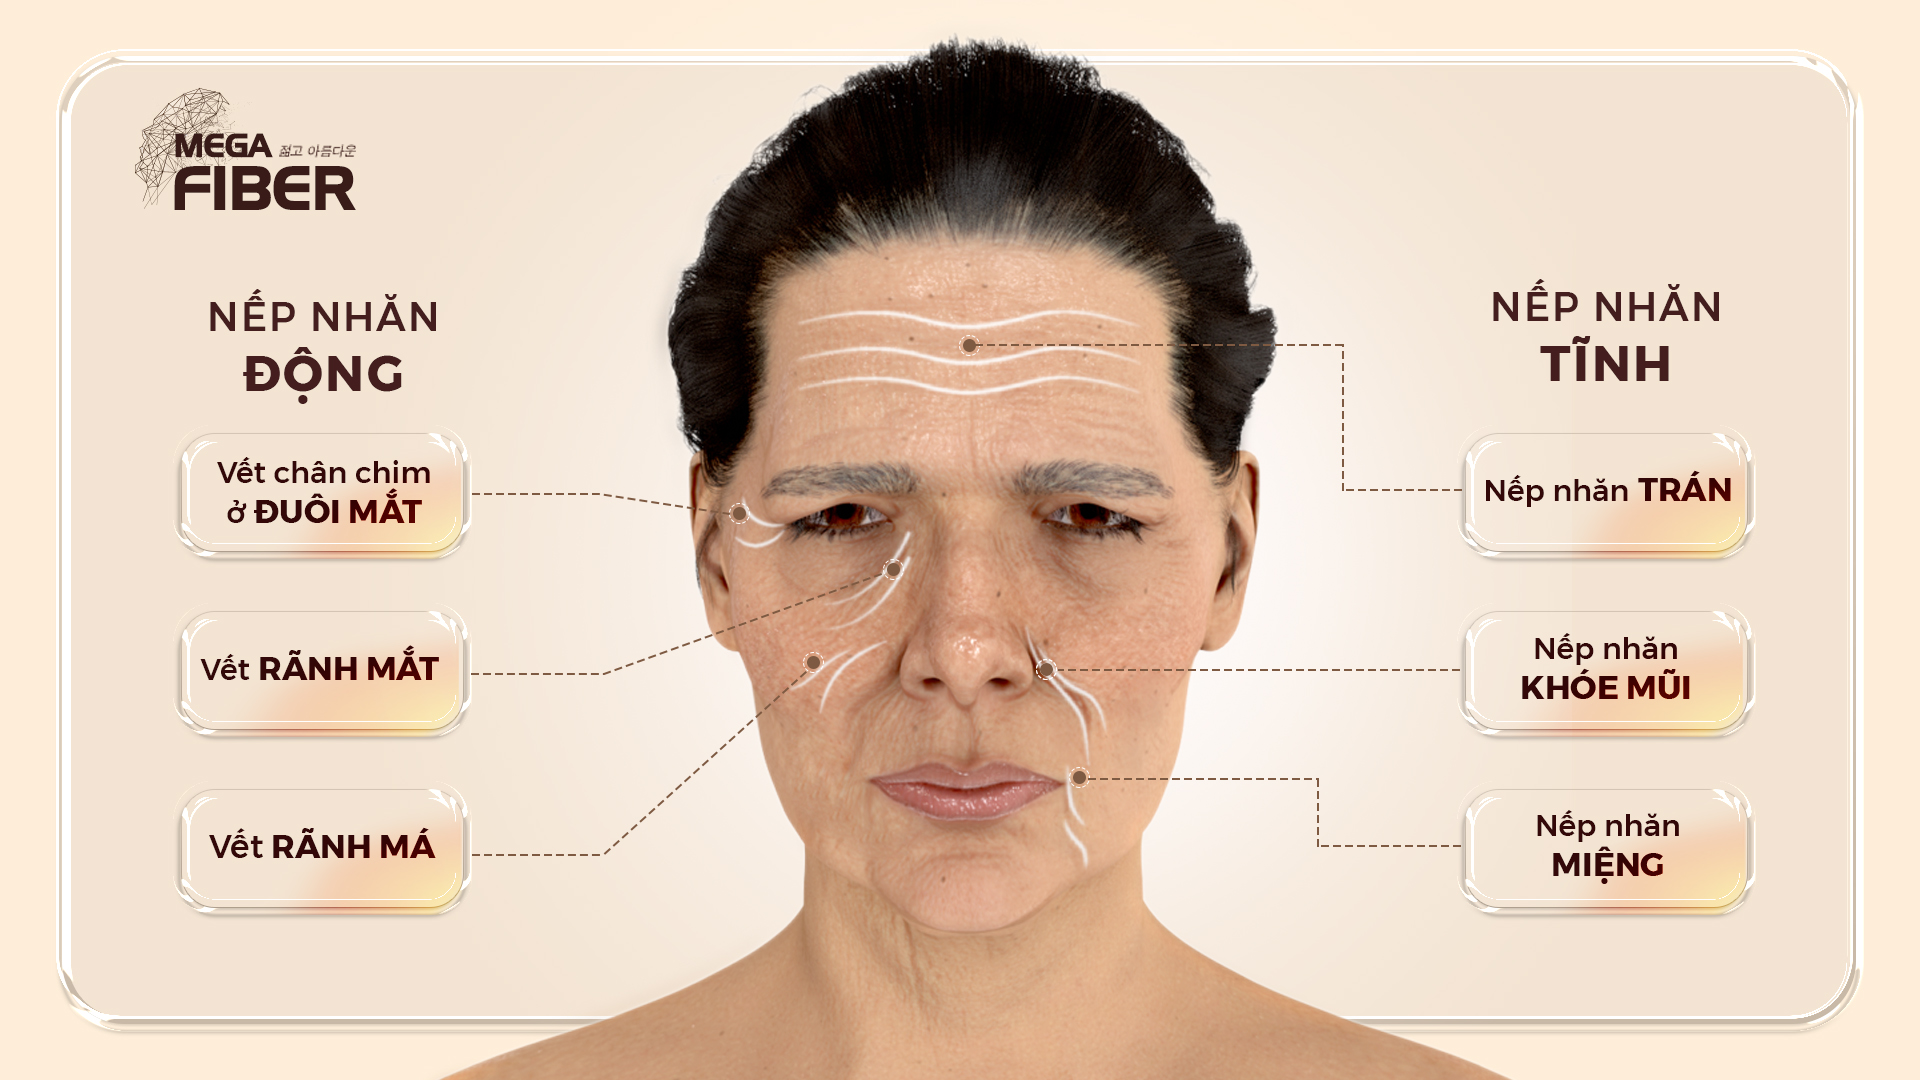 Cơ chế lão hóa da và cách điều trị hiệu quả